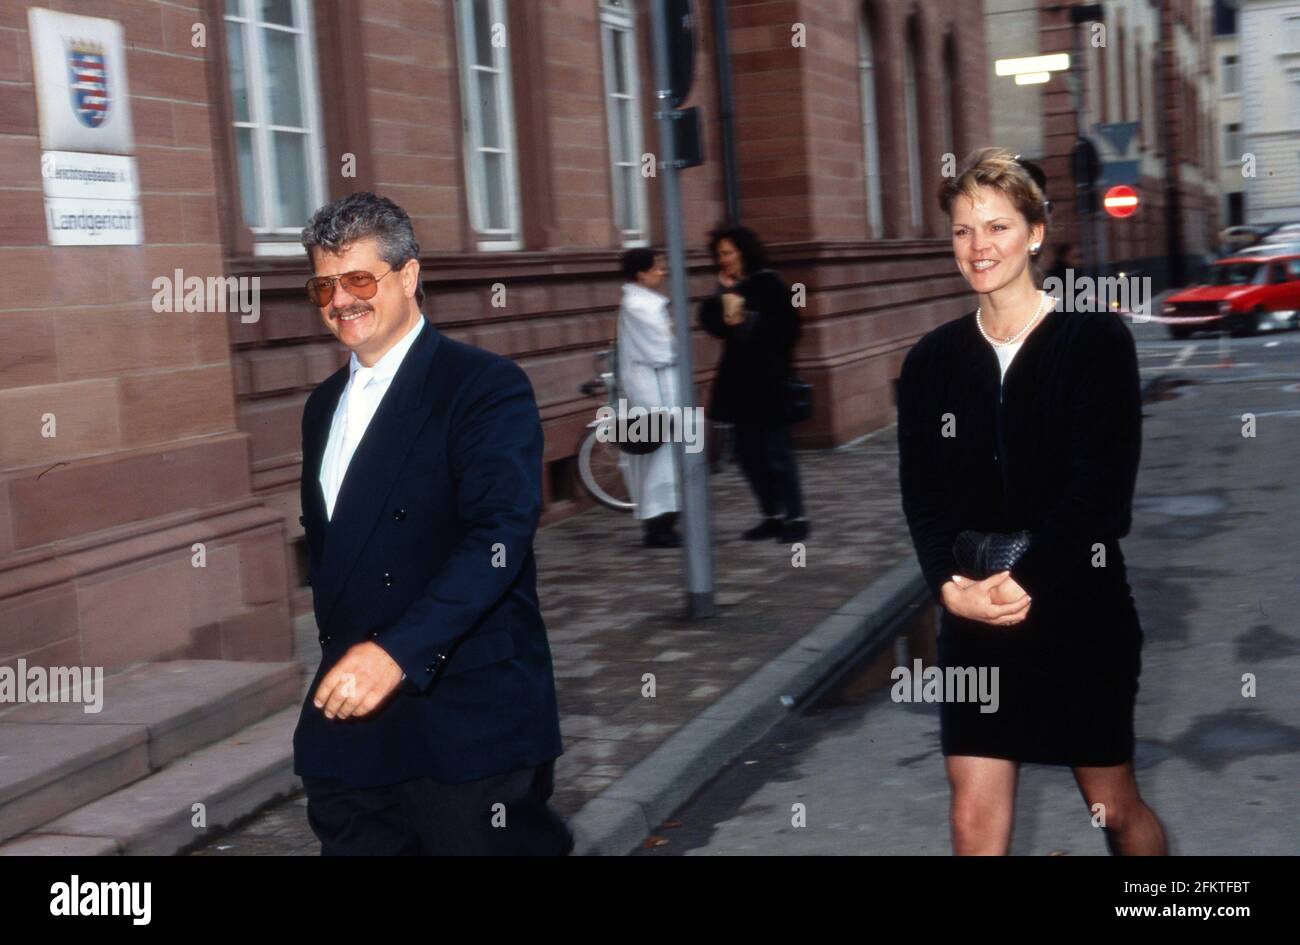 Rechtsanwalt Pauly beim Prozess gegen Giftgasmanager vor dem Landgericht in Darmstadt, Deutschland 1992. Stockfoto